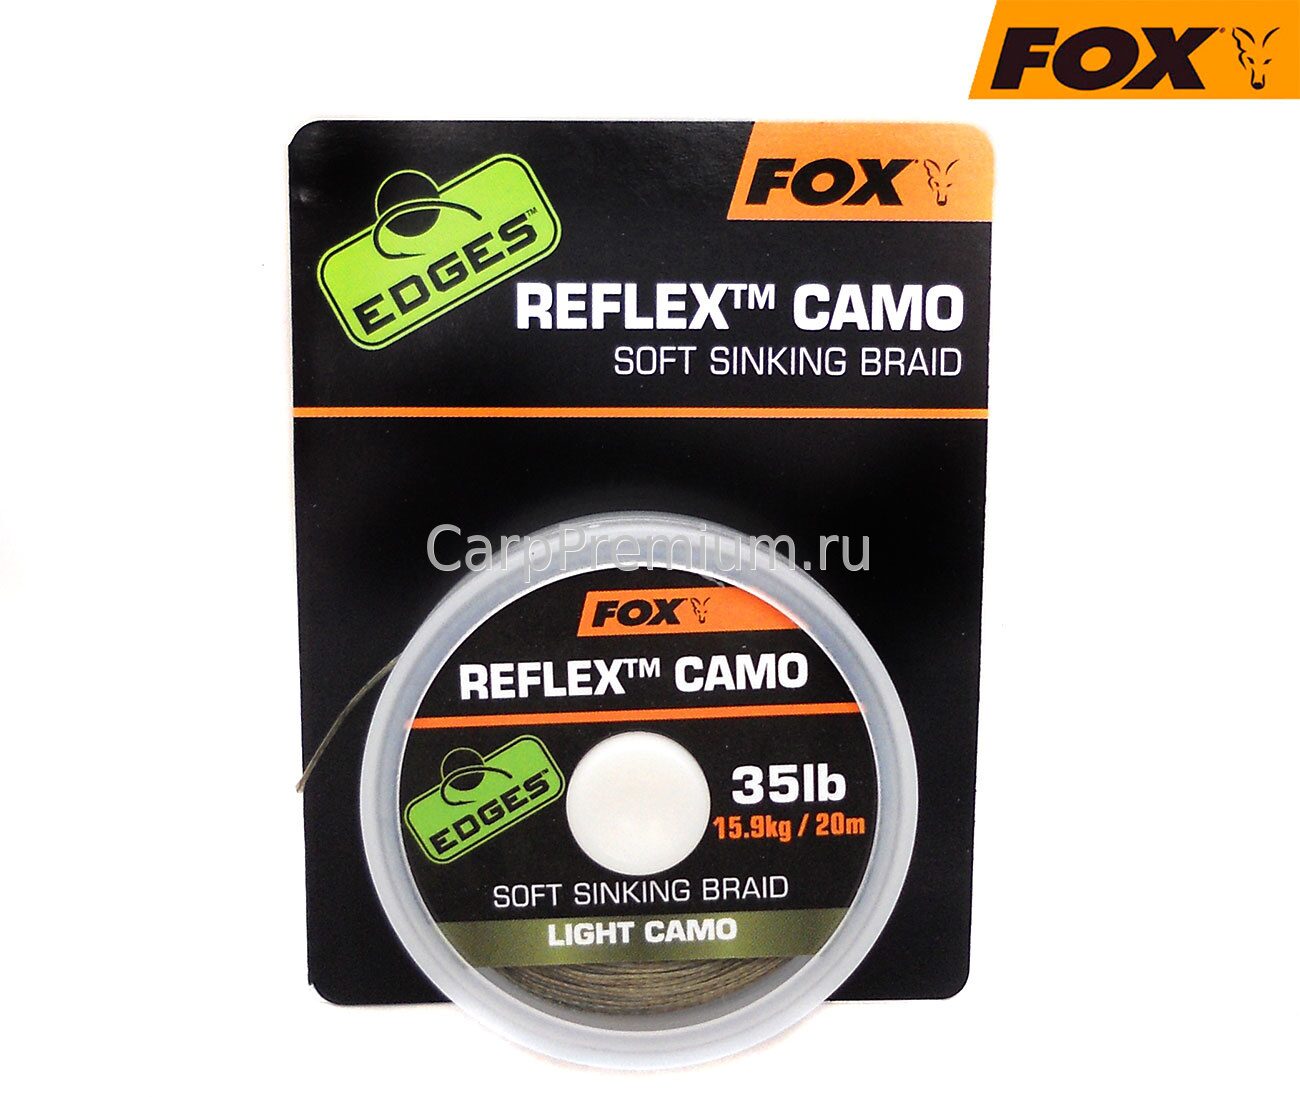 Поводковый материал без оплетки Зеленый 15.9 кг Fox (Фокс) - EDGES Reflex Camo Light Camo 35lb, 20 м